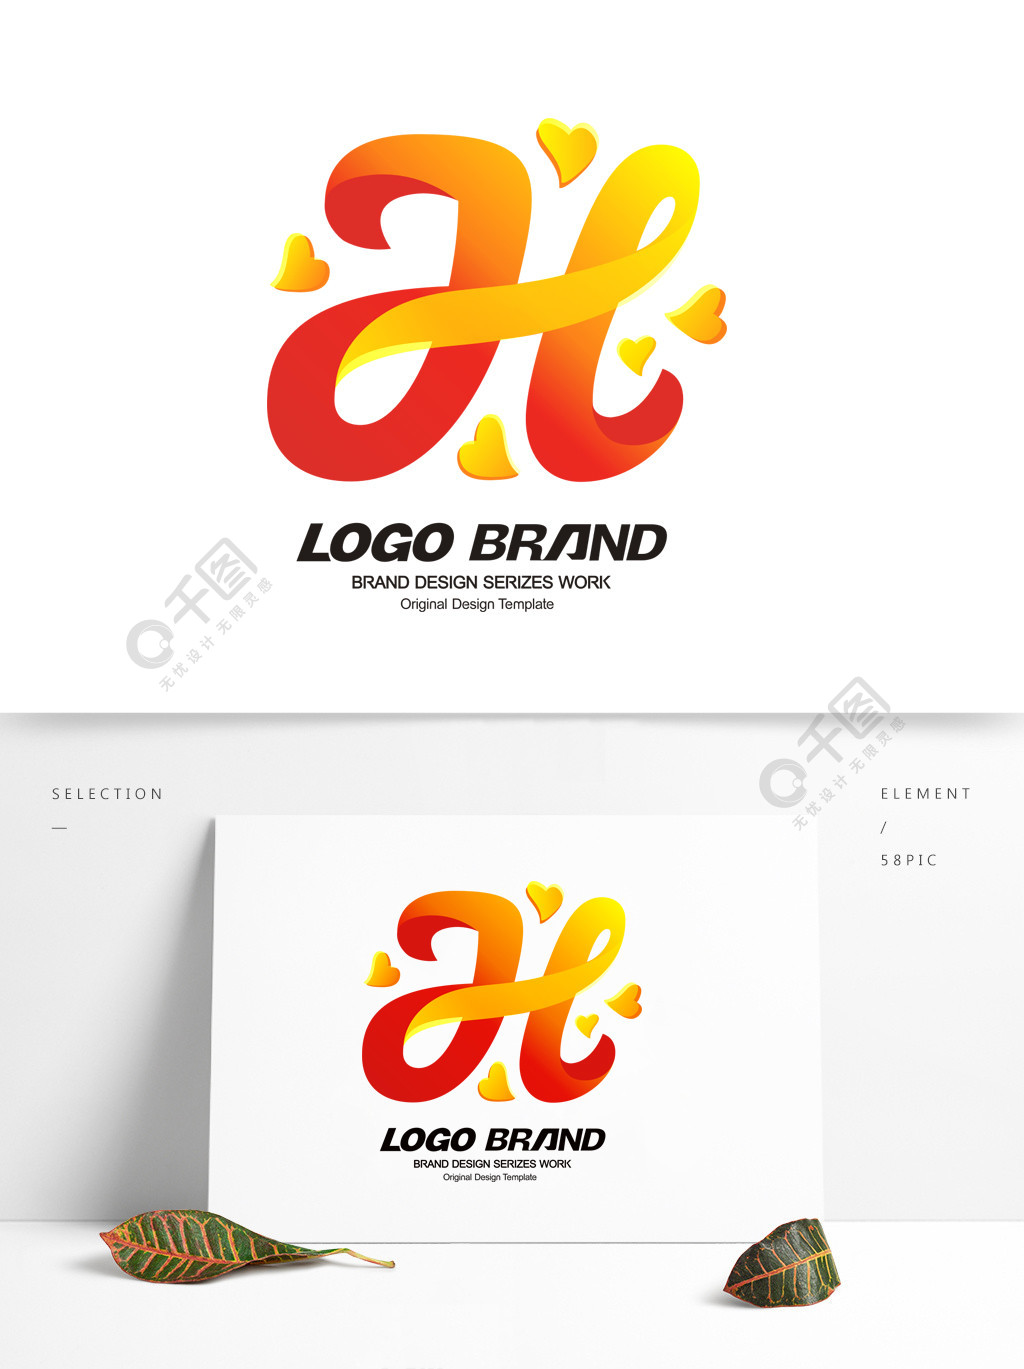 简约红黄h字母公司logo标志设计矢量图免费下载_cdr